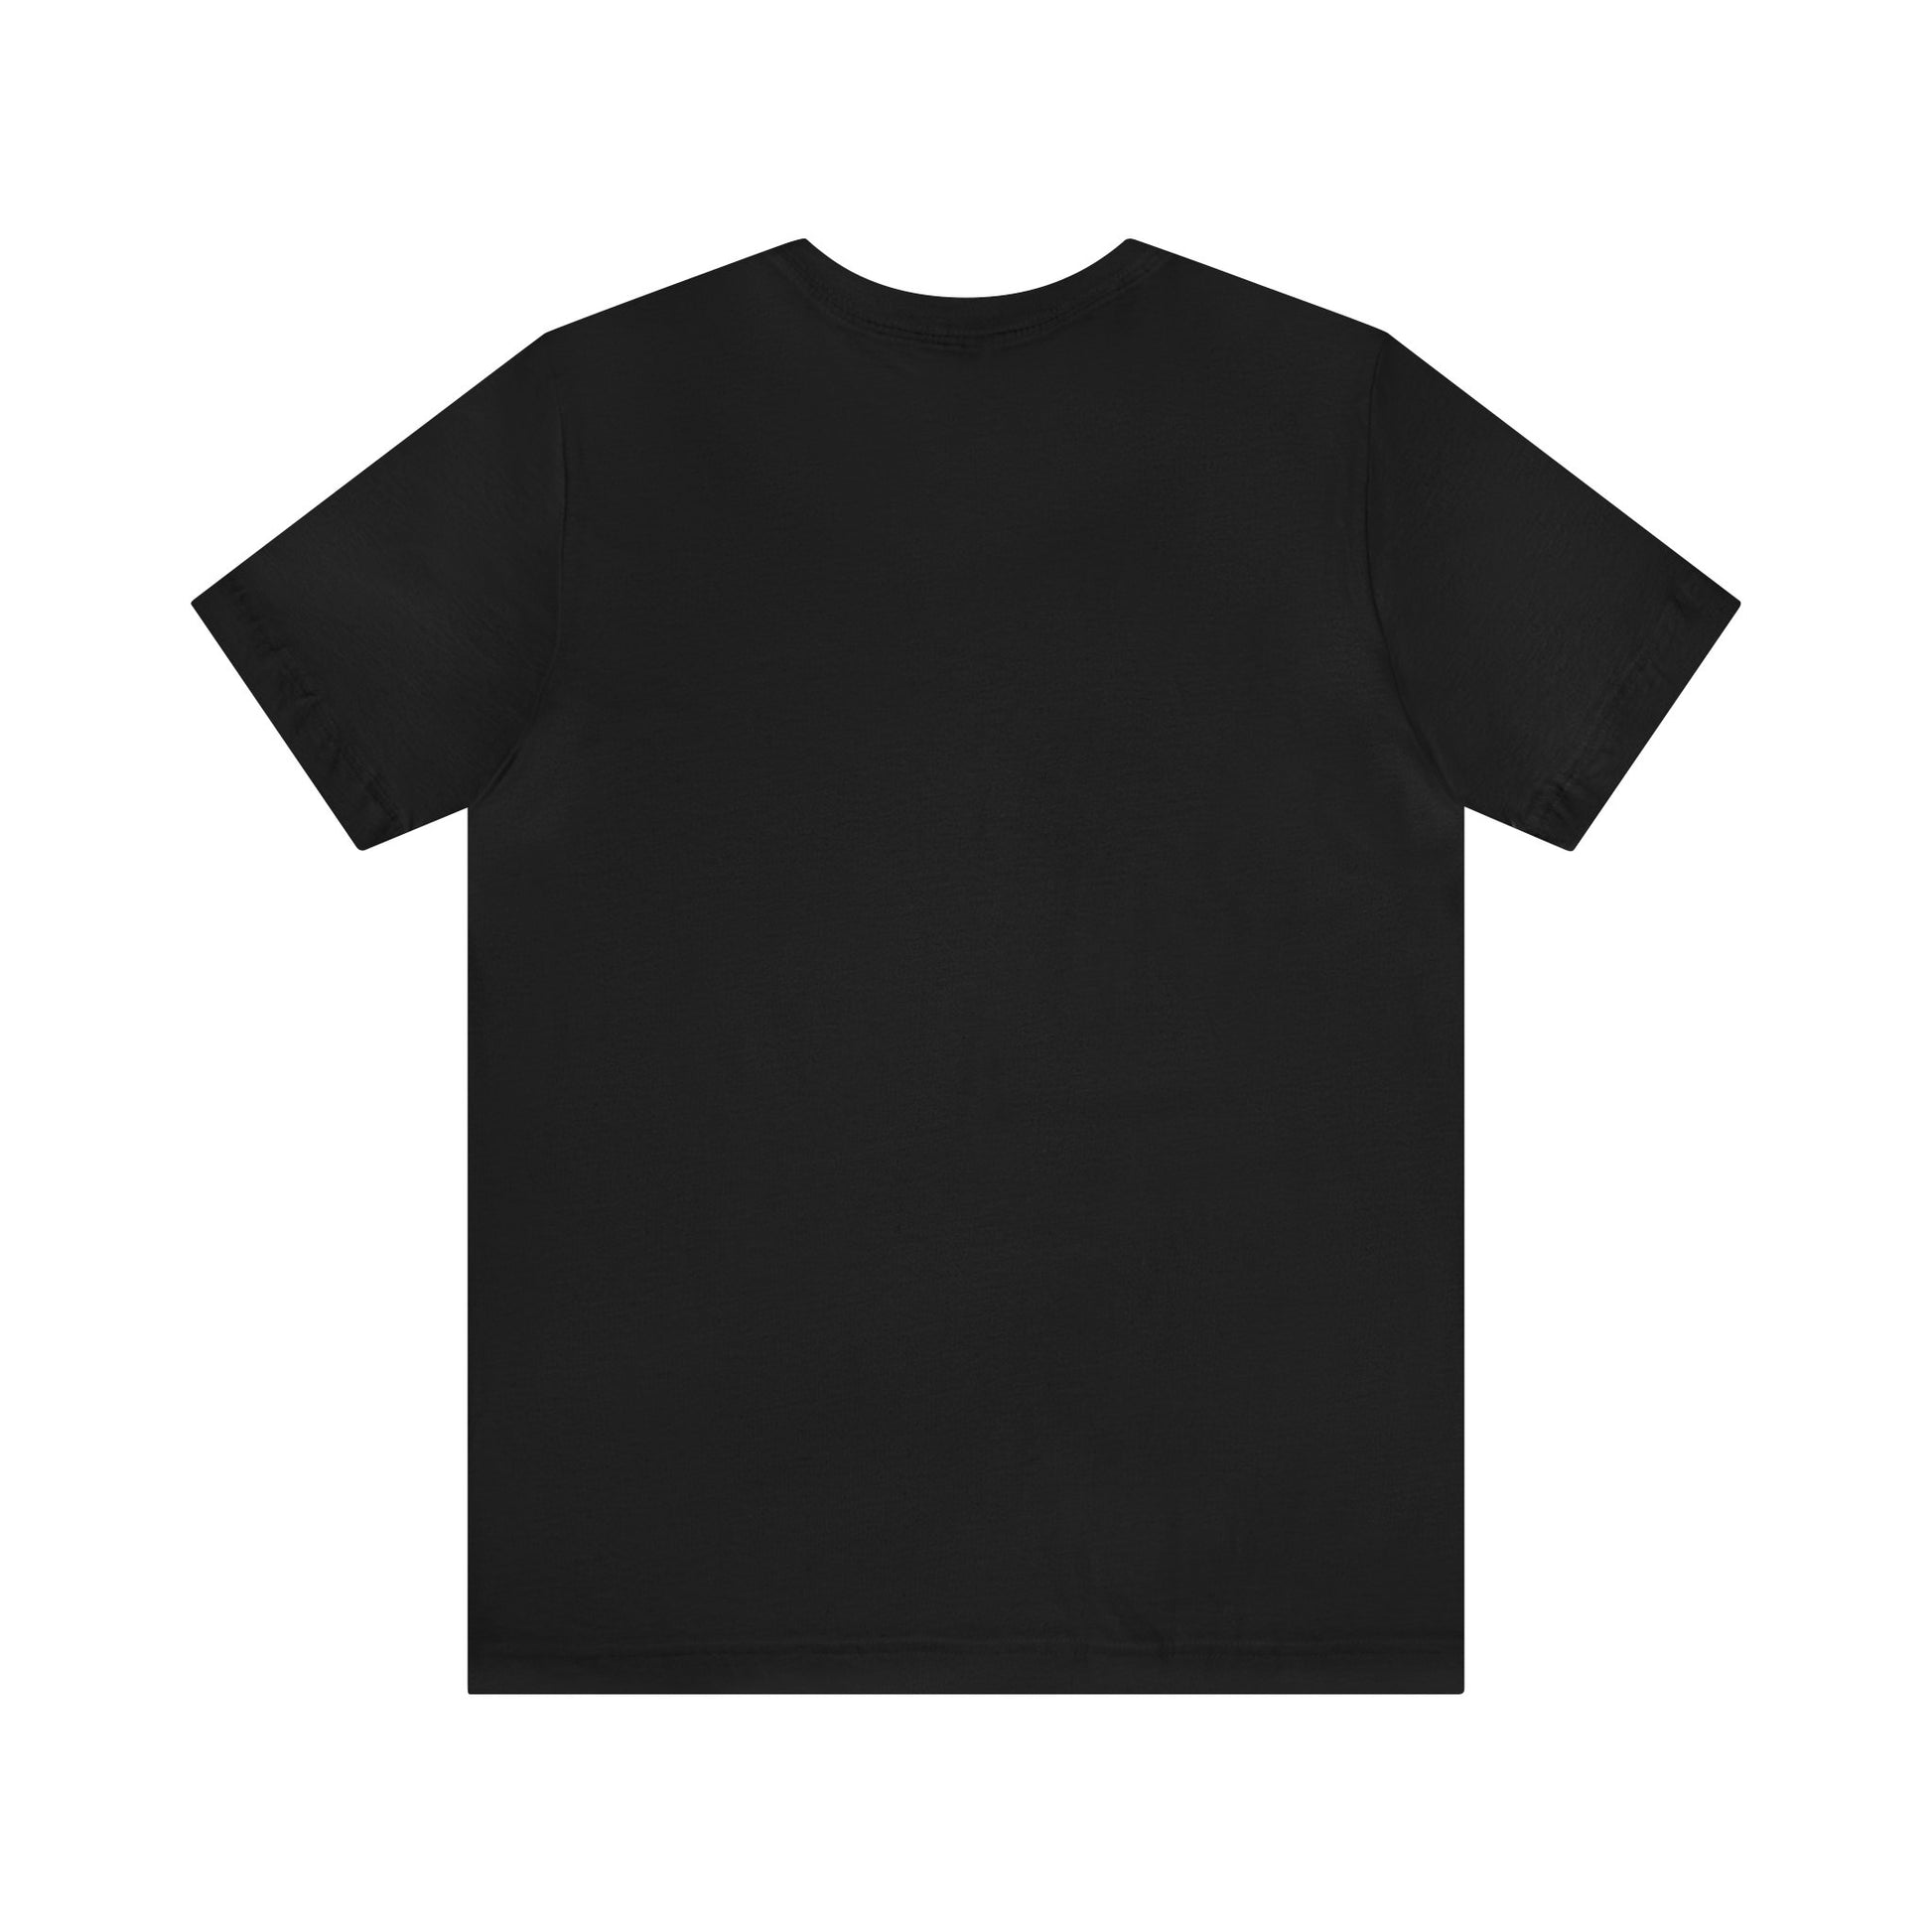 black tshirt blank rear view